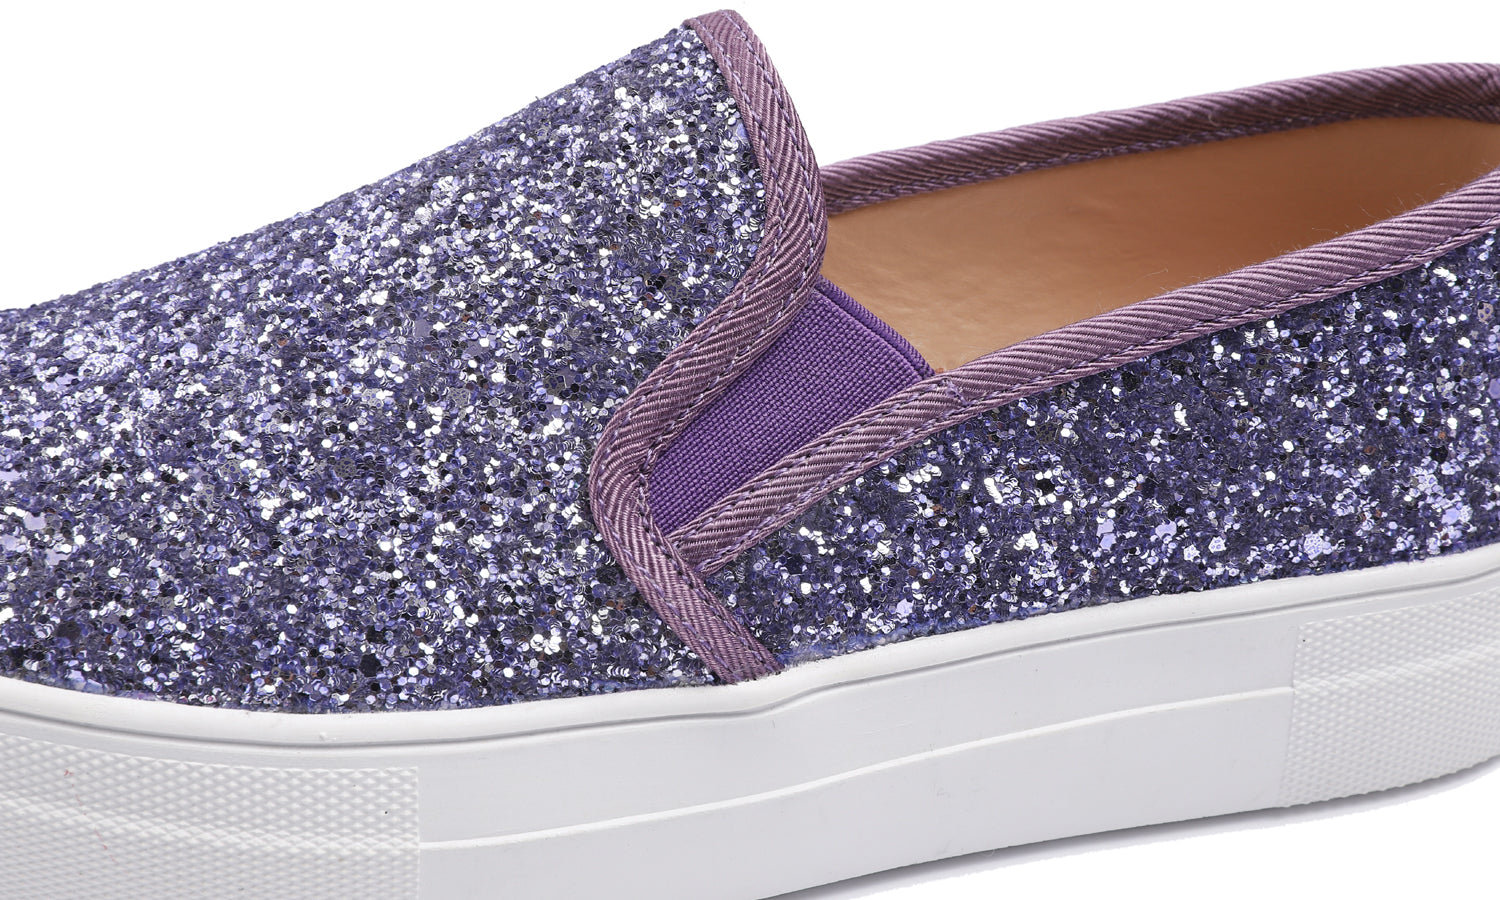 Feversole Women's Glitter Lavender Platform Slip On Sneaker Casual Flat Loafers